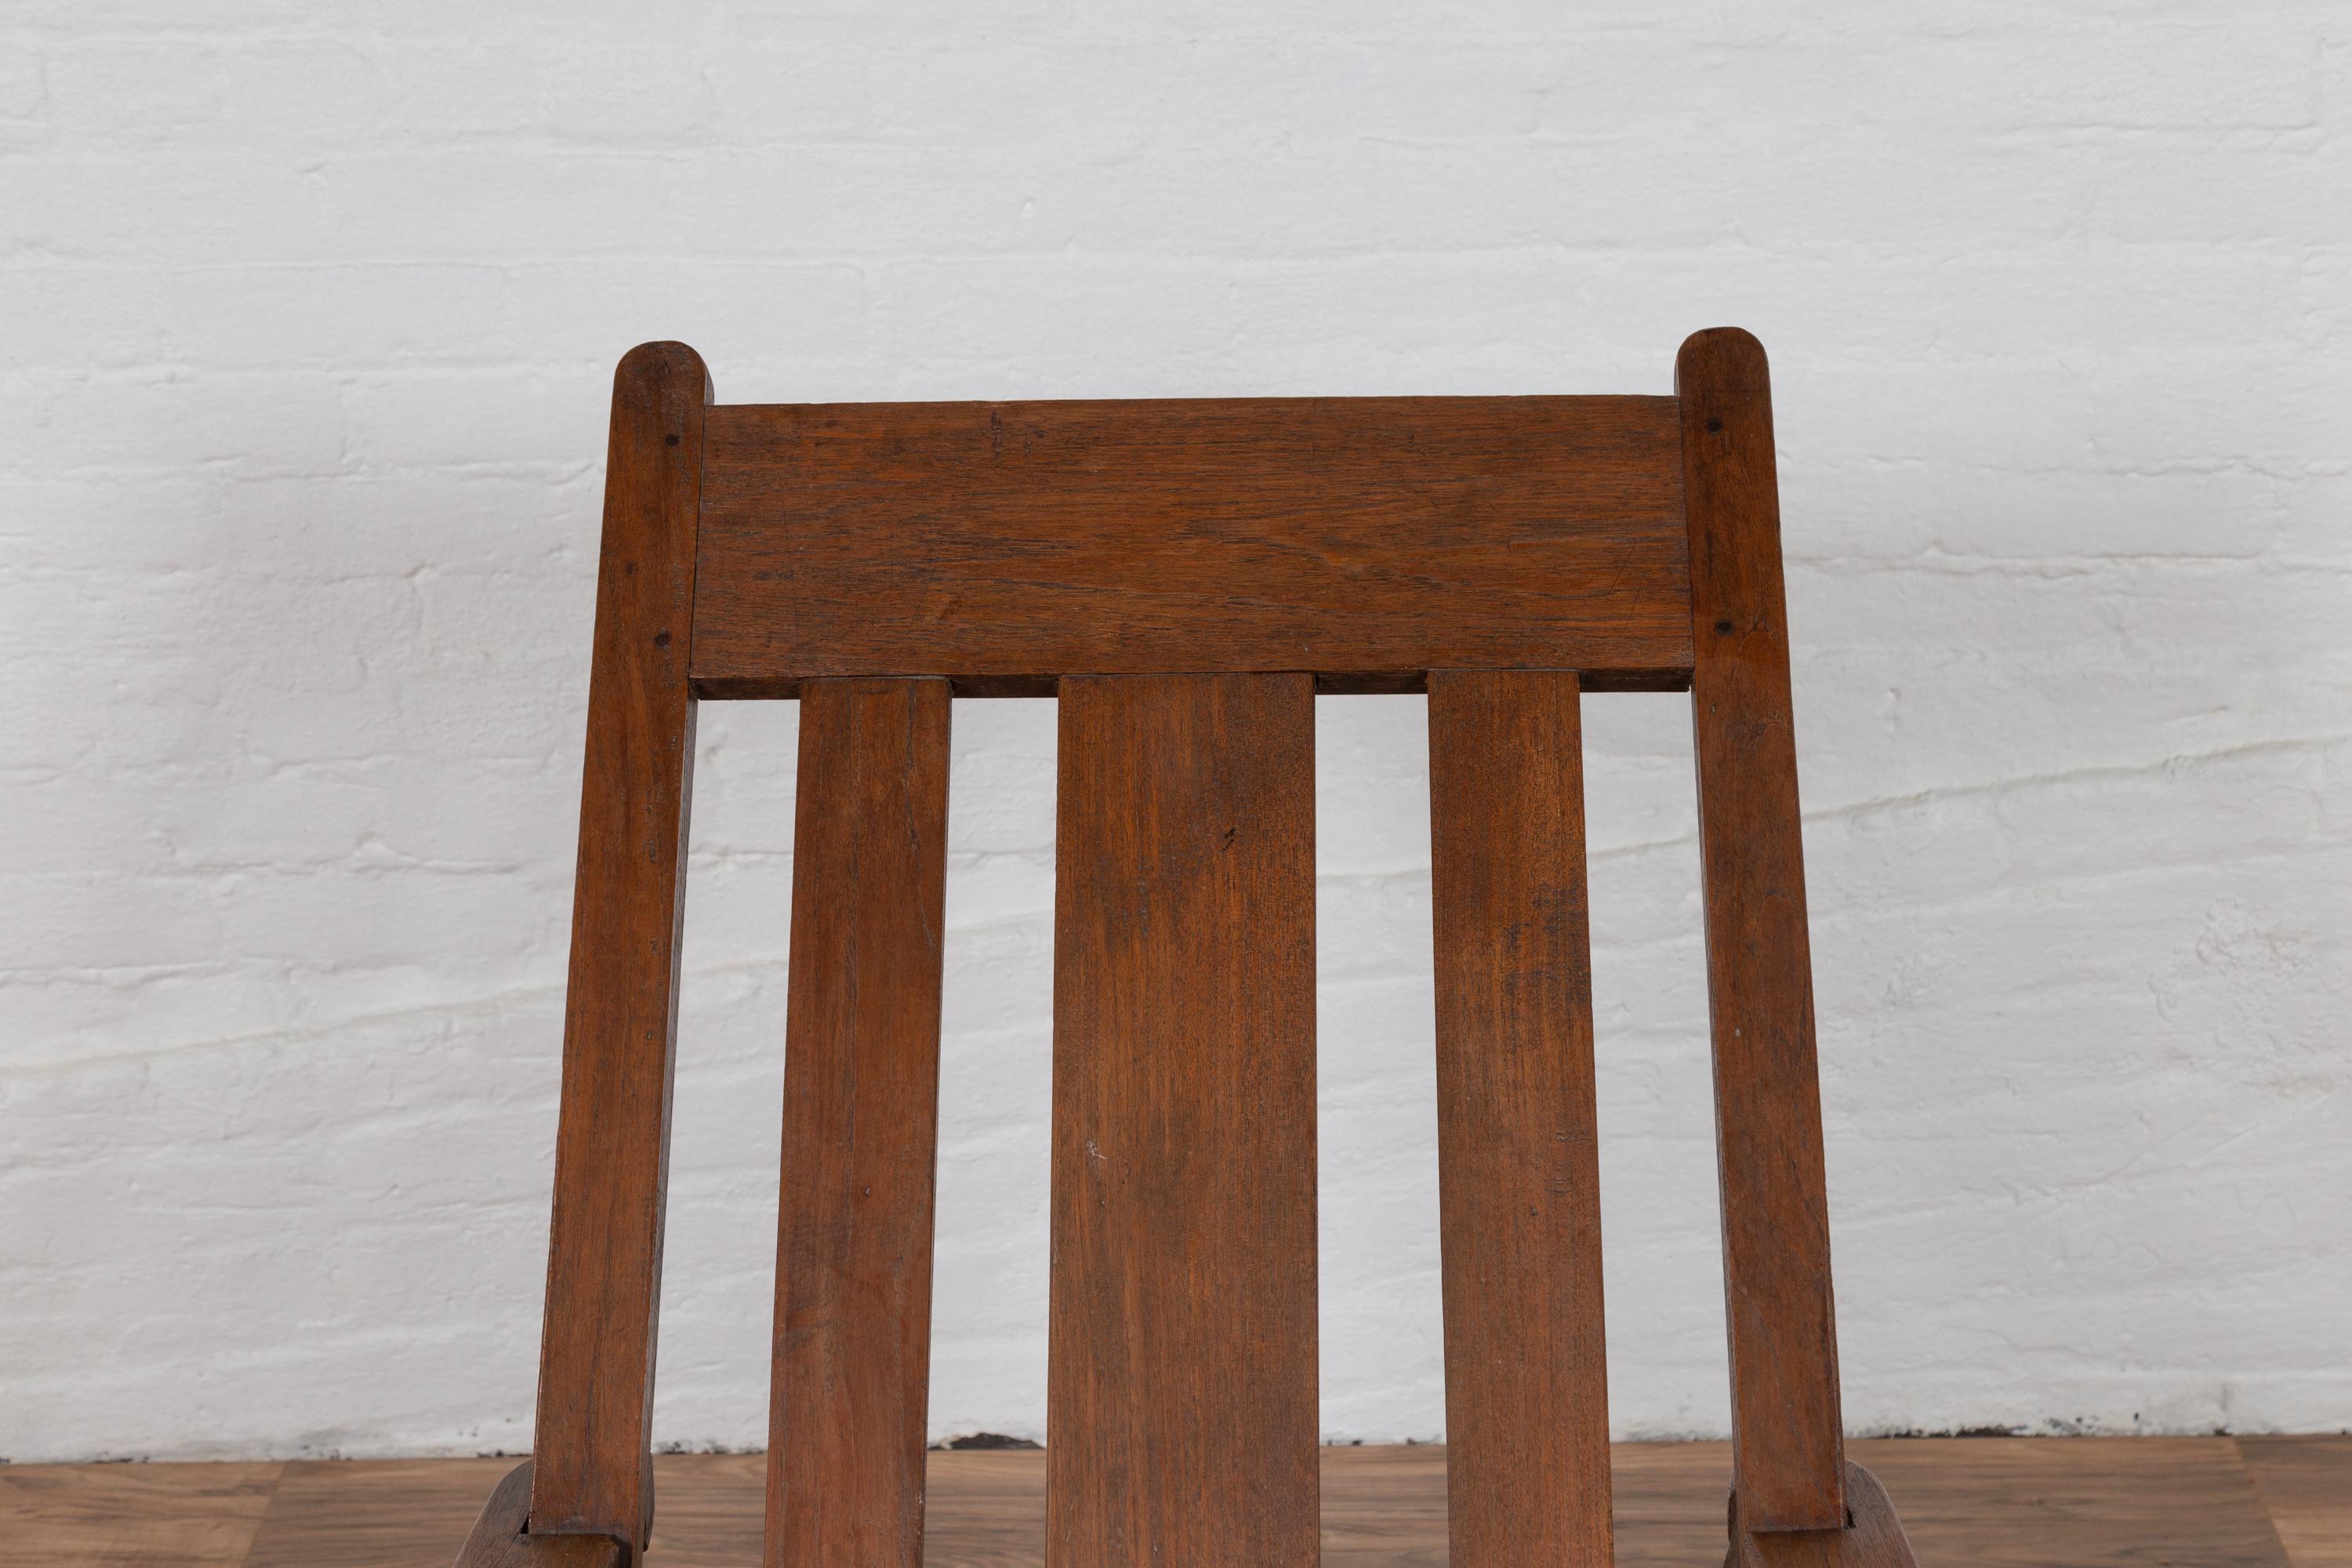 Ancienne chaise longue de plantation Coloni du début du 20e siècle, originaire de Madura, en Indonésie, avec dossier incliné et longs accoudoirs. Née à Madura, au large de la côte nord-est de Java, cette chaise longue de style colonial hollandais